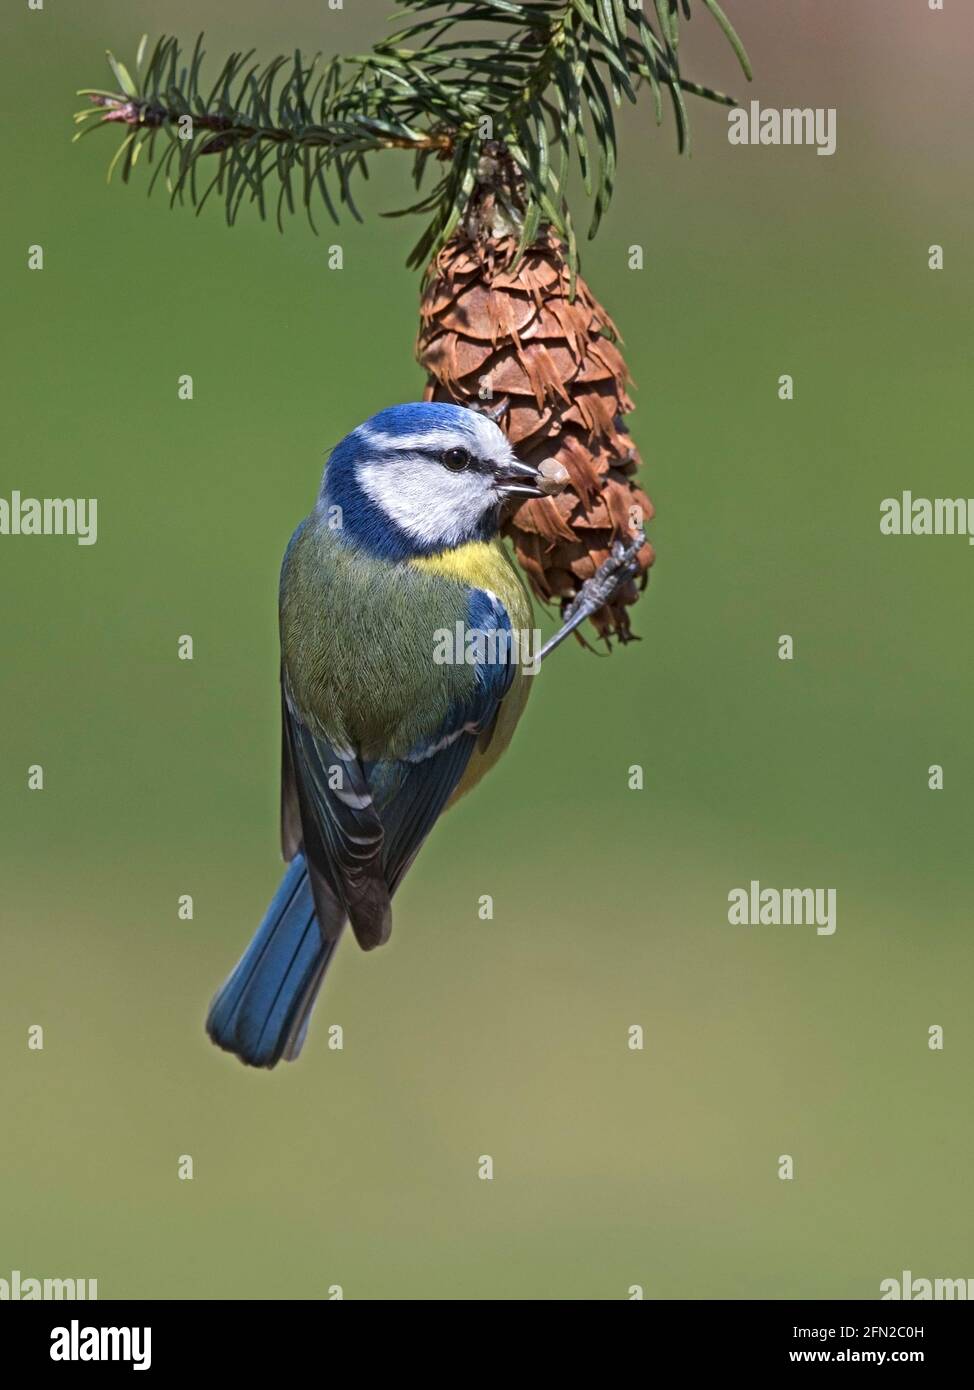 European blue tit feeding on pine cone Stock Photo